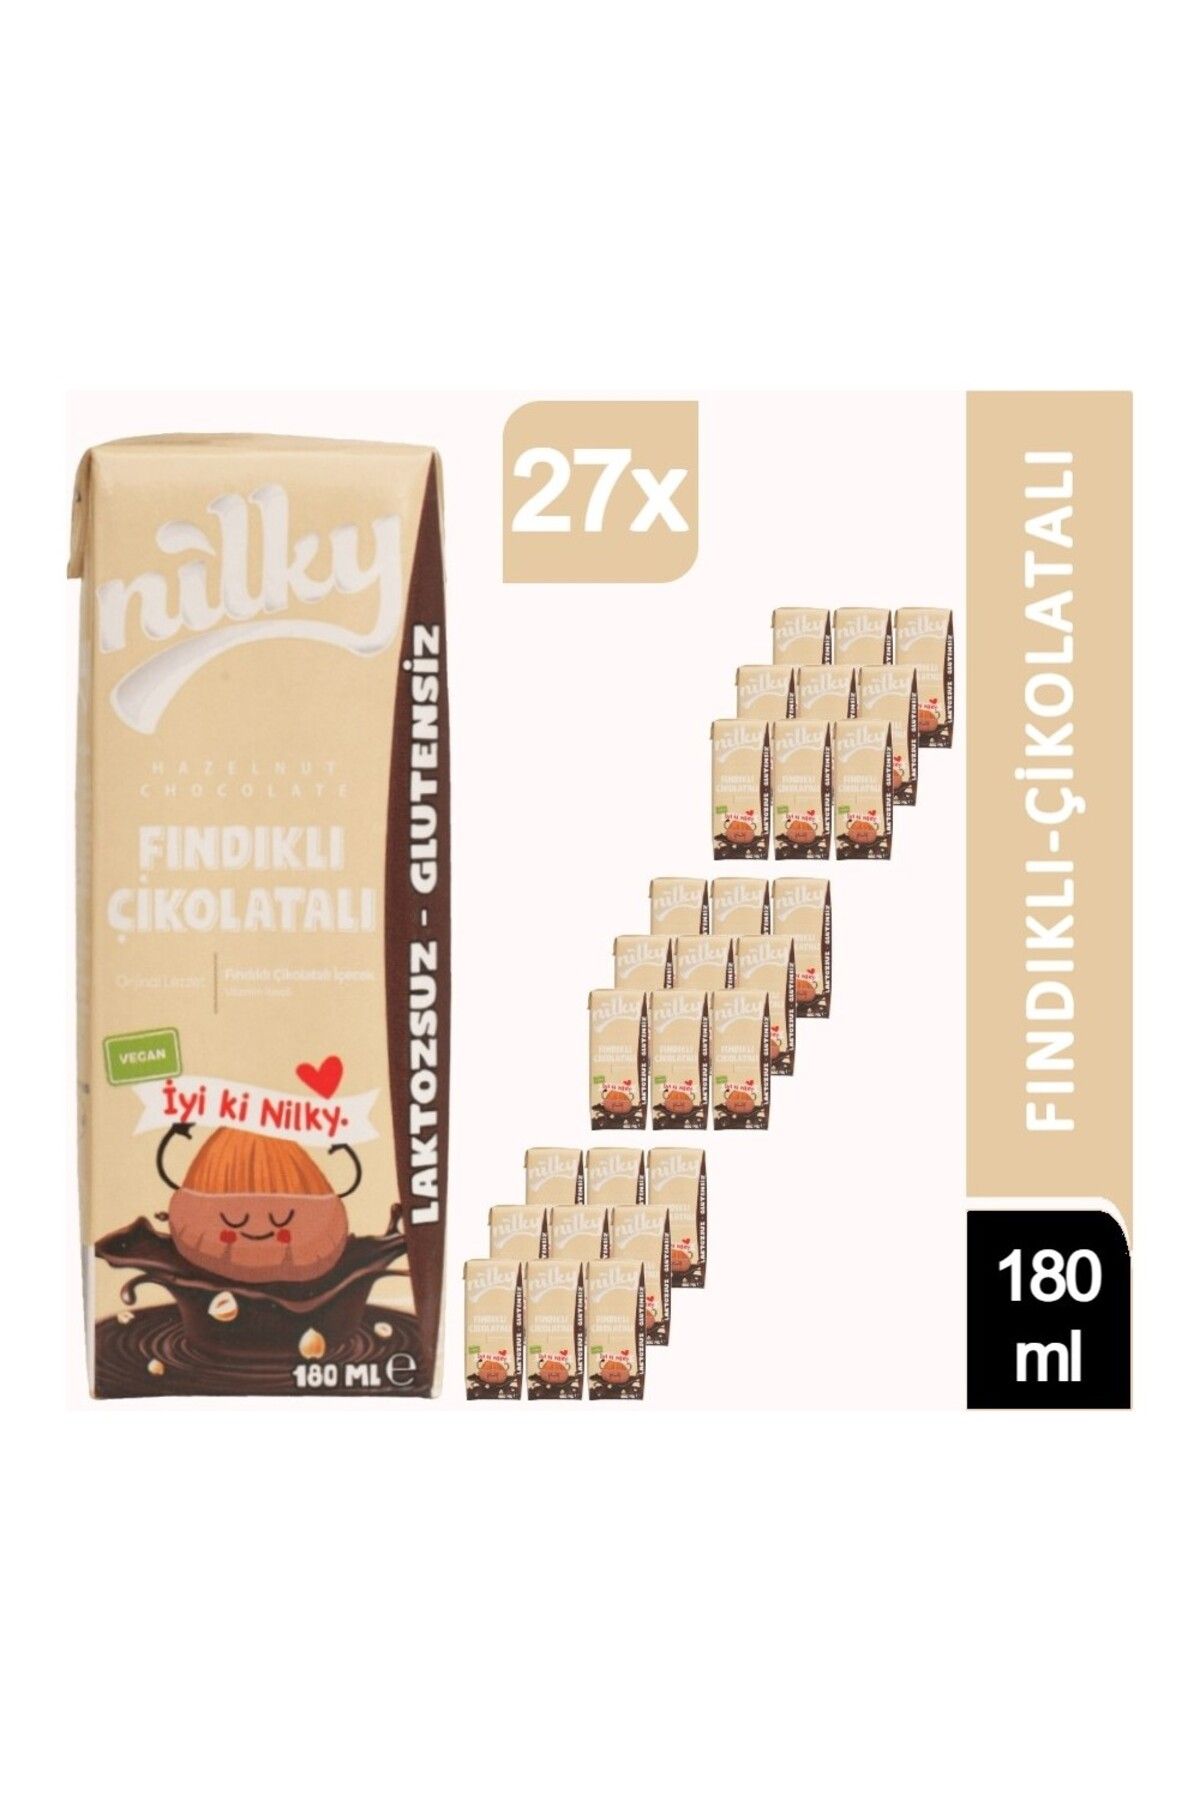 NİLKY Nilky Fındıklı Çikolatalı Süt Glütensiz Bitkisel Bazı Laktosuz 27 X 180 ml